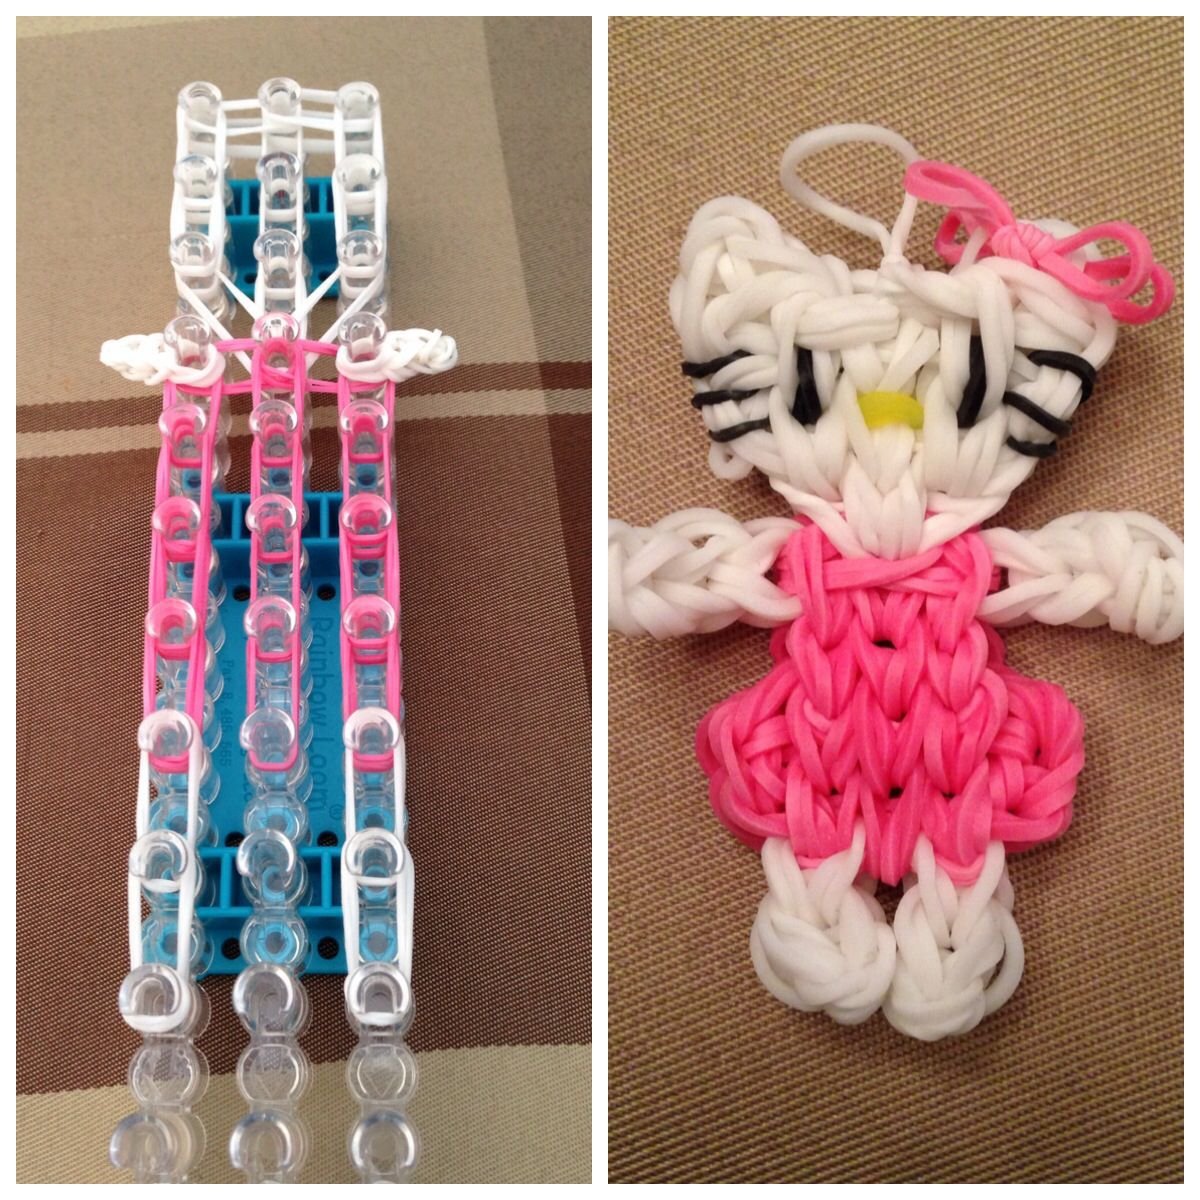 Плетения фигурок. Фигуры из резиночек. Игрушки из резиночек. Плетеные игрушки из резинок. Игрушки из резиночек для плетения.